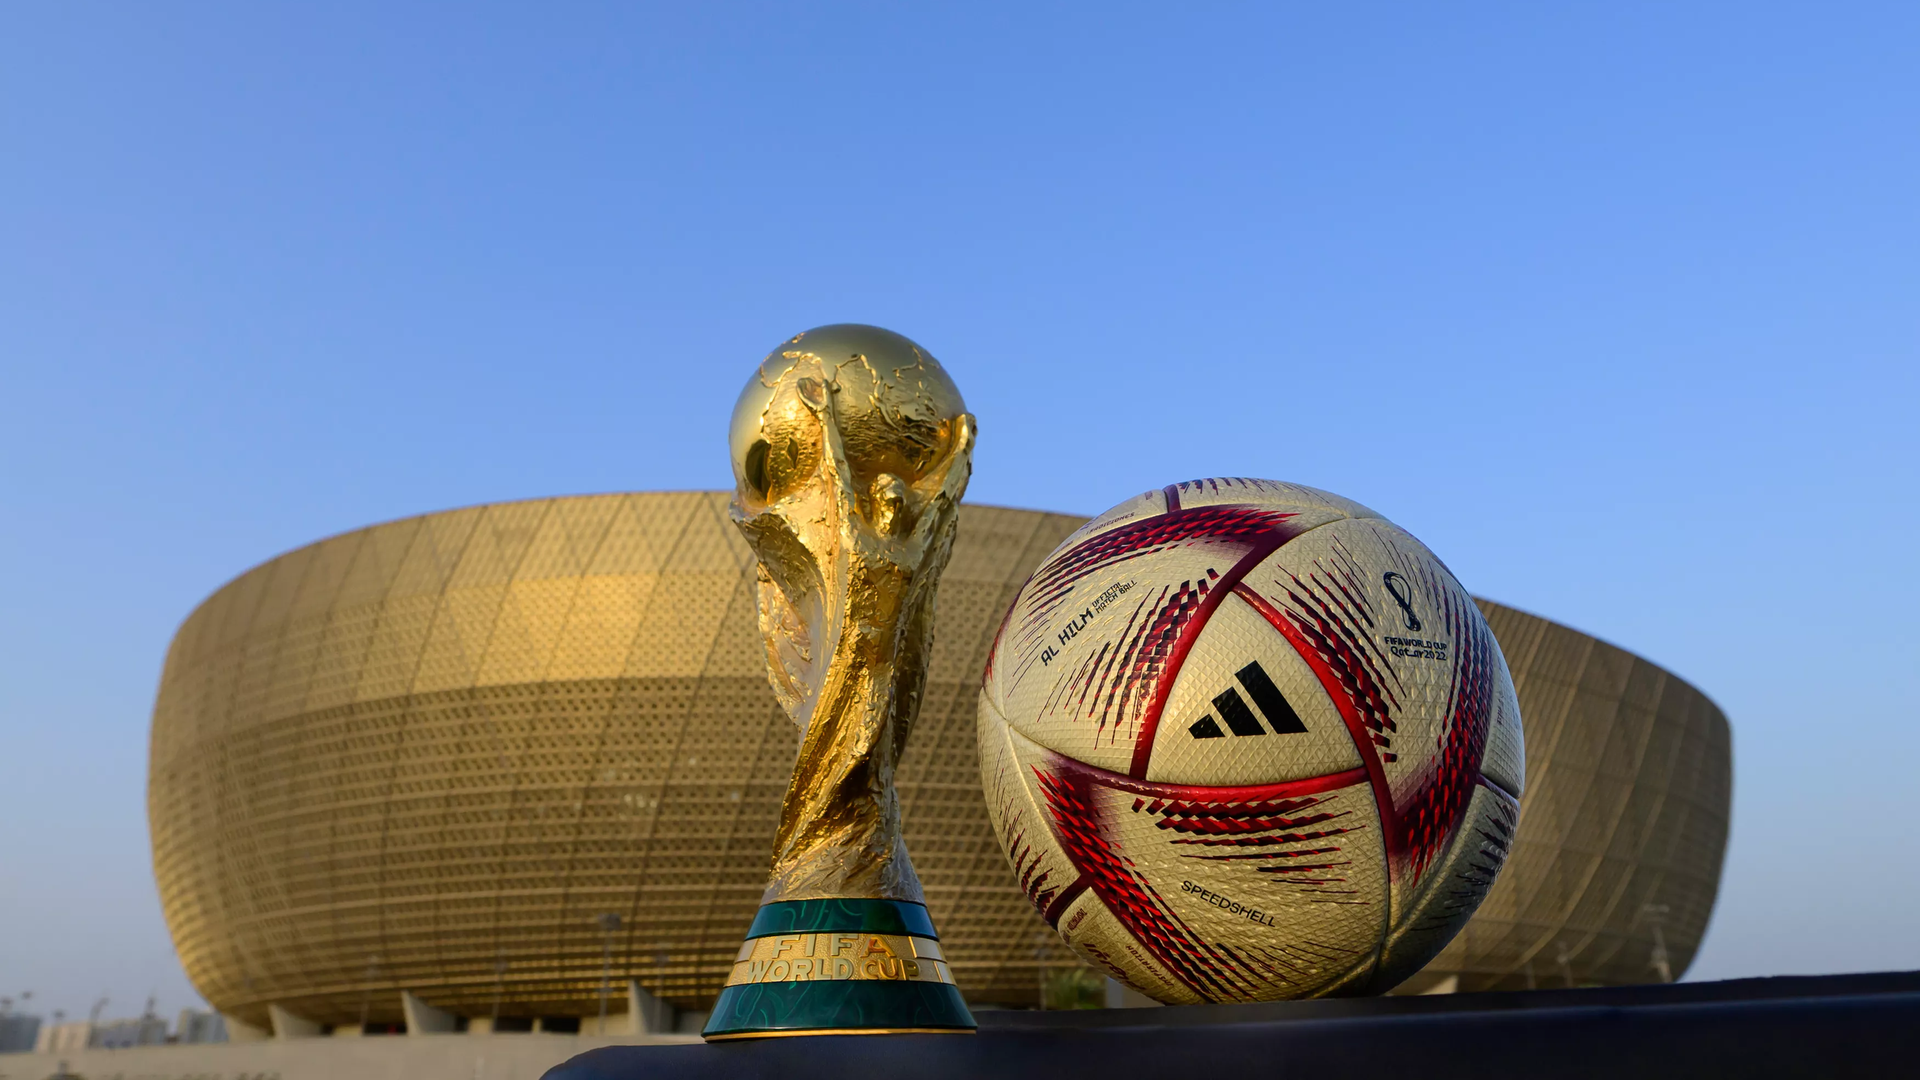 Ball 2022. Мяч адидас ЧМ 2022. Qatar World Cup 2022 мяч. Мяч FIFA World Qatar 2022 Cup adidas.